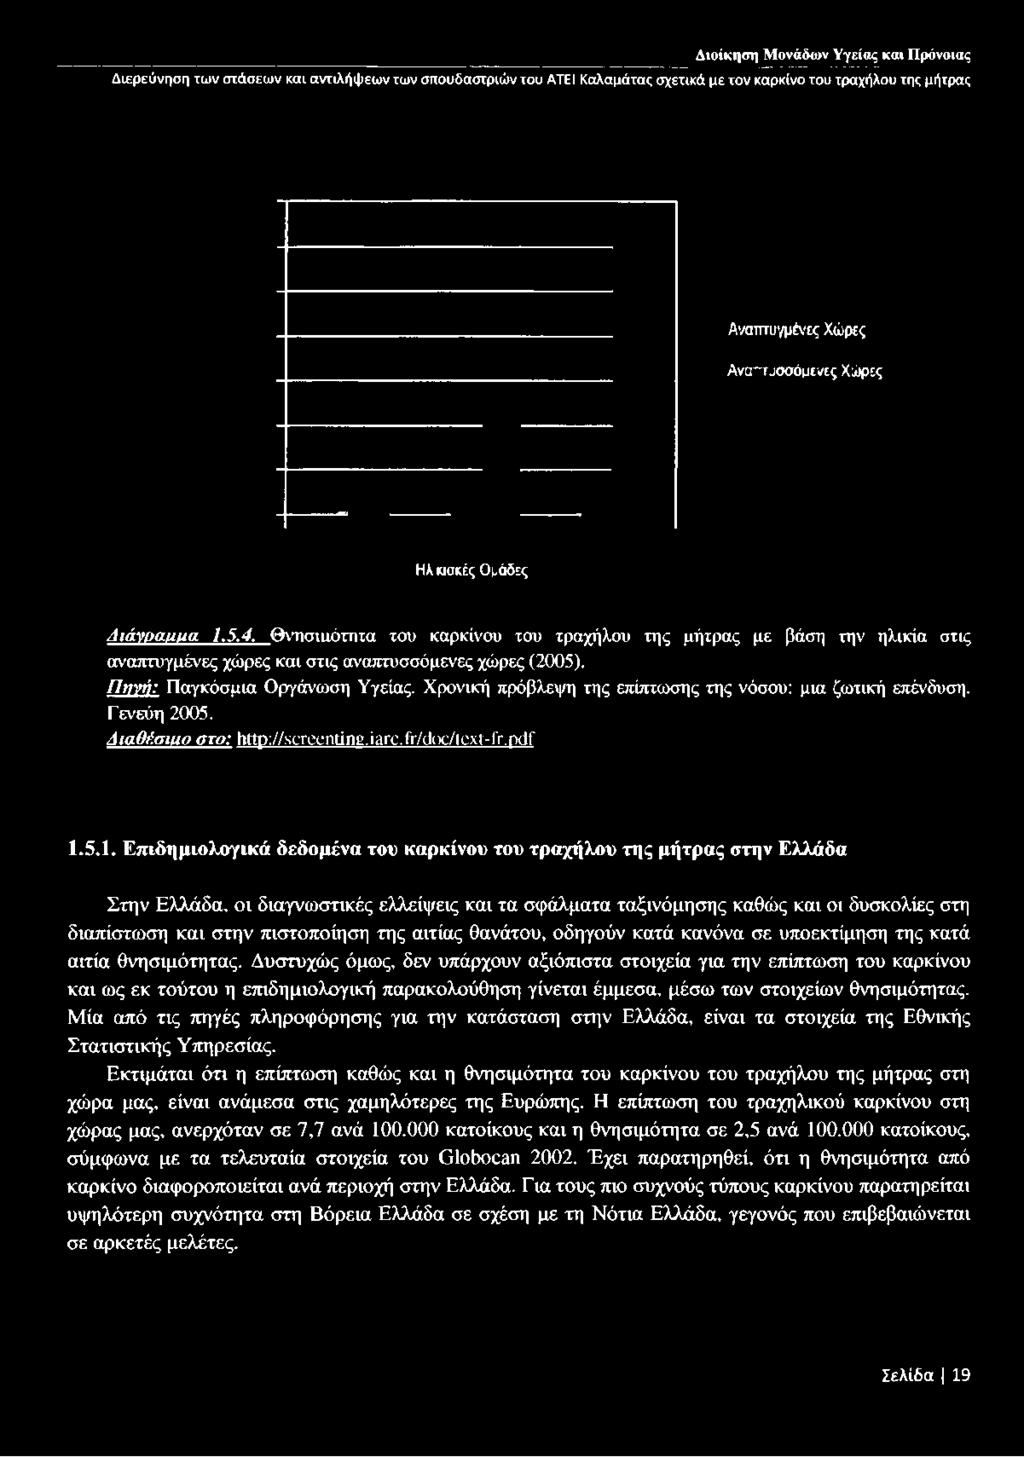 Χρονική πρόβλεψη της επίπτωσης της νόσου: μια ζωτική επένδυση. Γενεύη 2005. Διαθέσιιιο στο: http://screenting.iarc.fr/doc/text-fr.pdf 1.